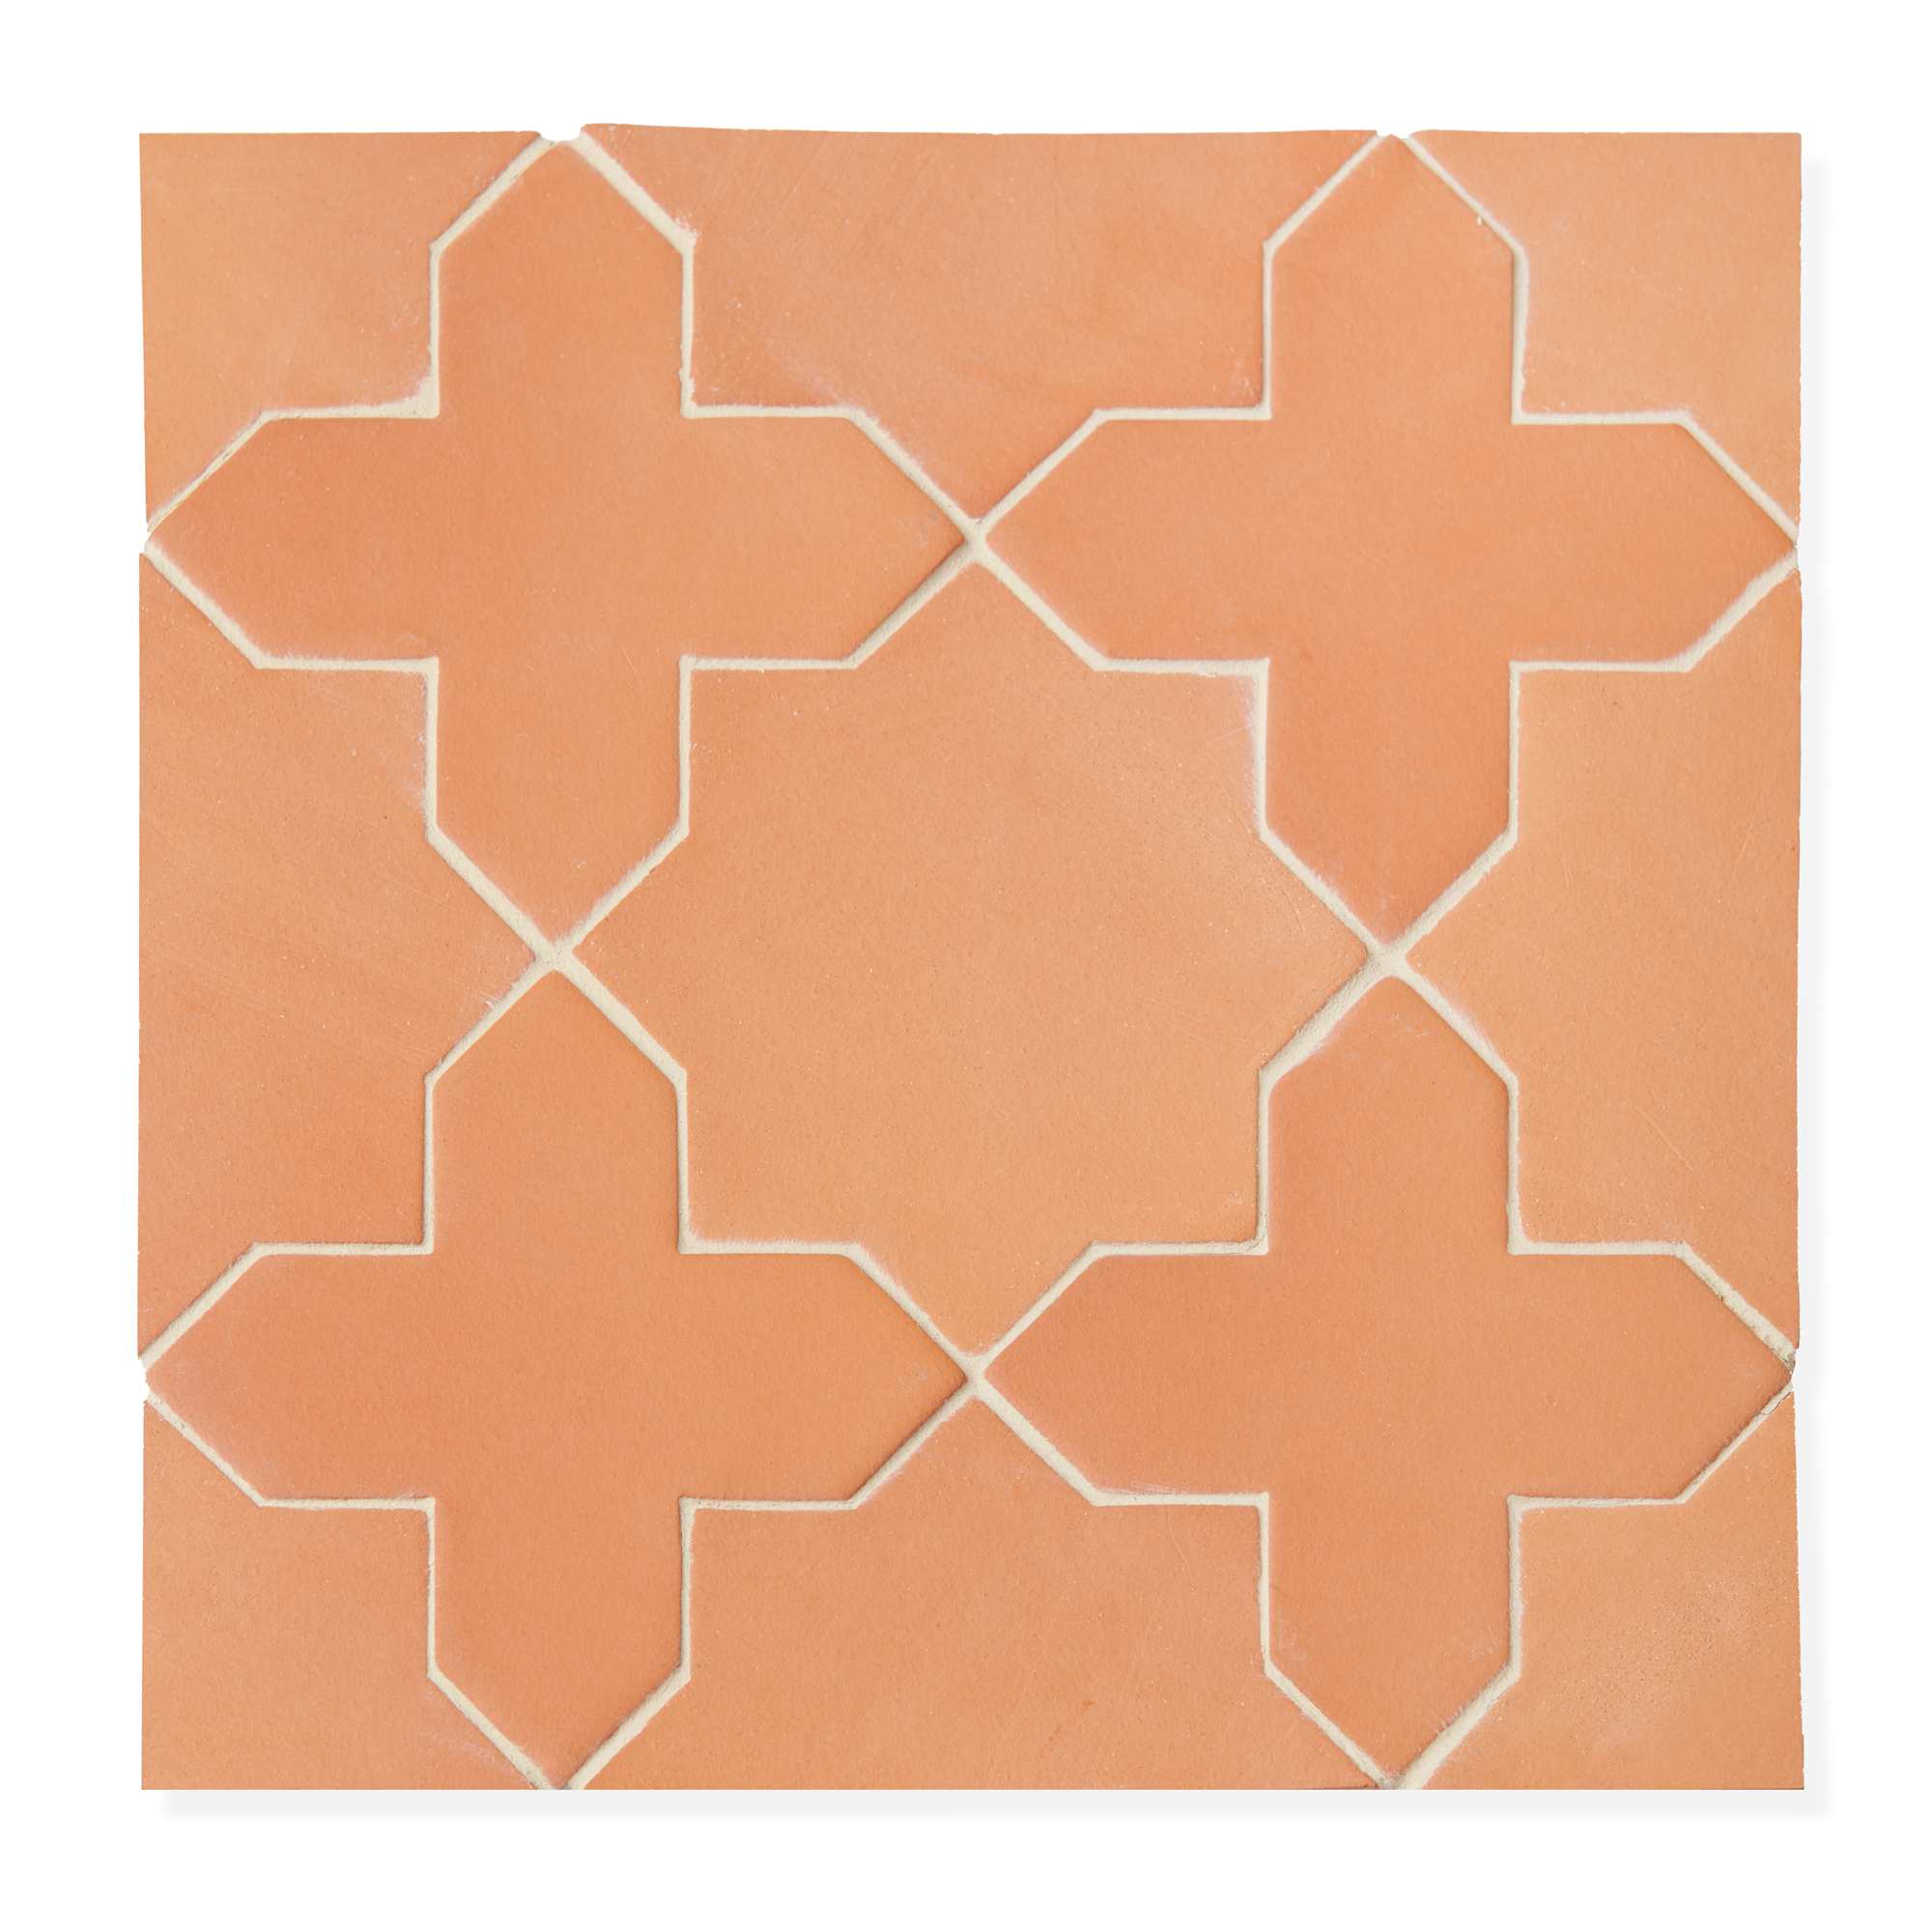 Sample: Terracotta Tile - Star & Cross (1 sample=2 tiles)